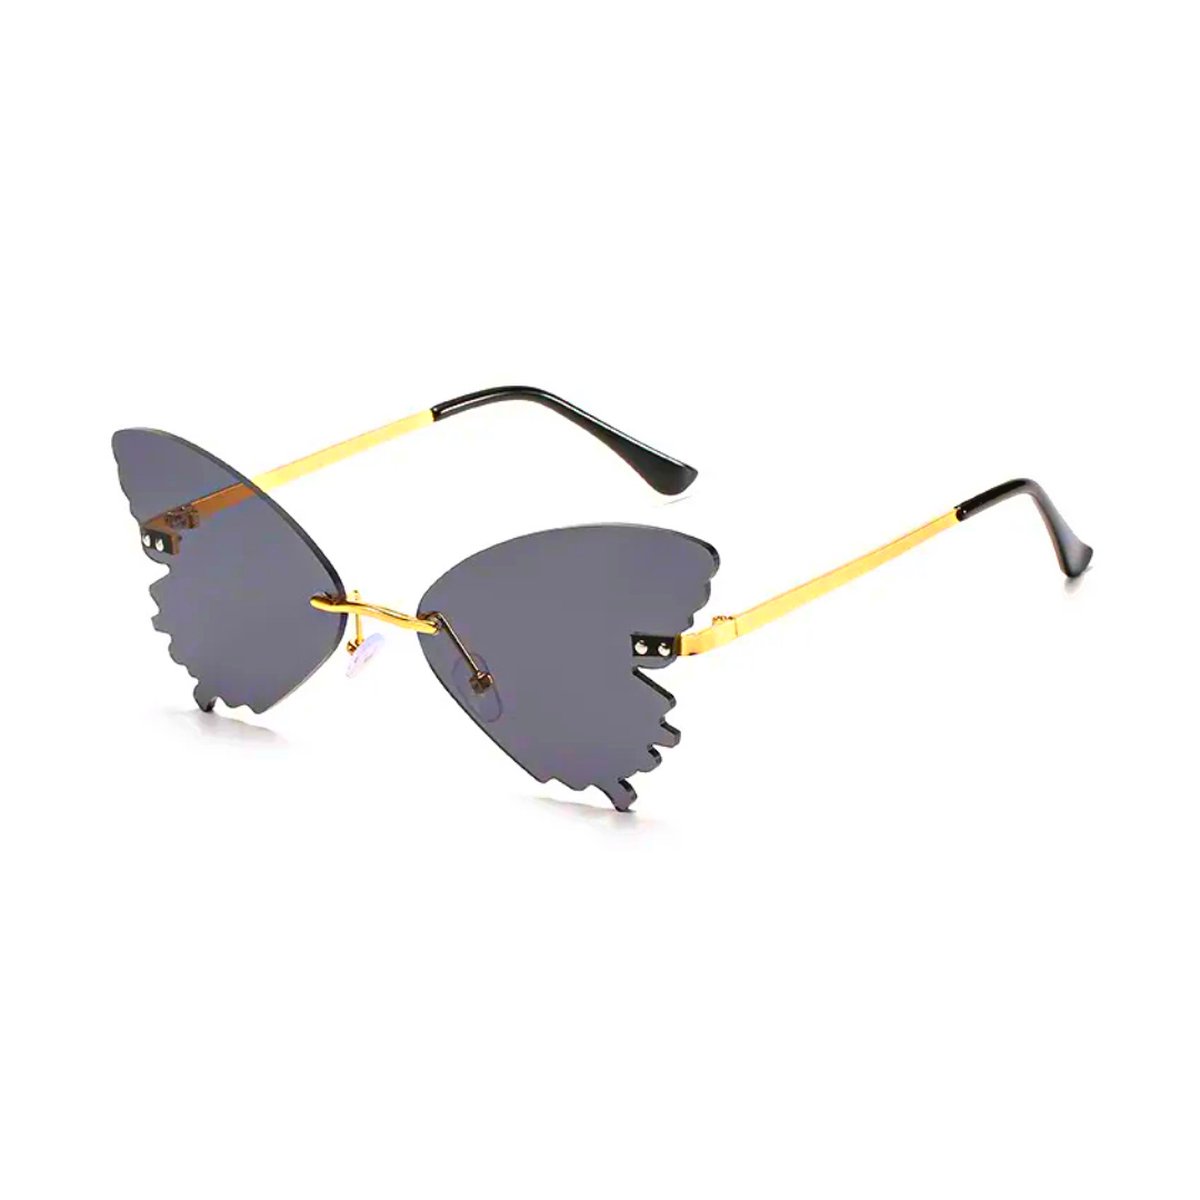 Vlinder zonnebril - Zwart - festivalbril / hippie bril / technobril / rave bril / butterfly glasses / retro zonnebril / hartjes bril / carnaval bril / accessoires / feest bril / gekke bril / verkleed bril / valentijn